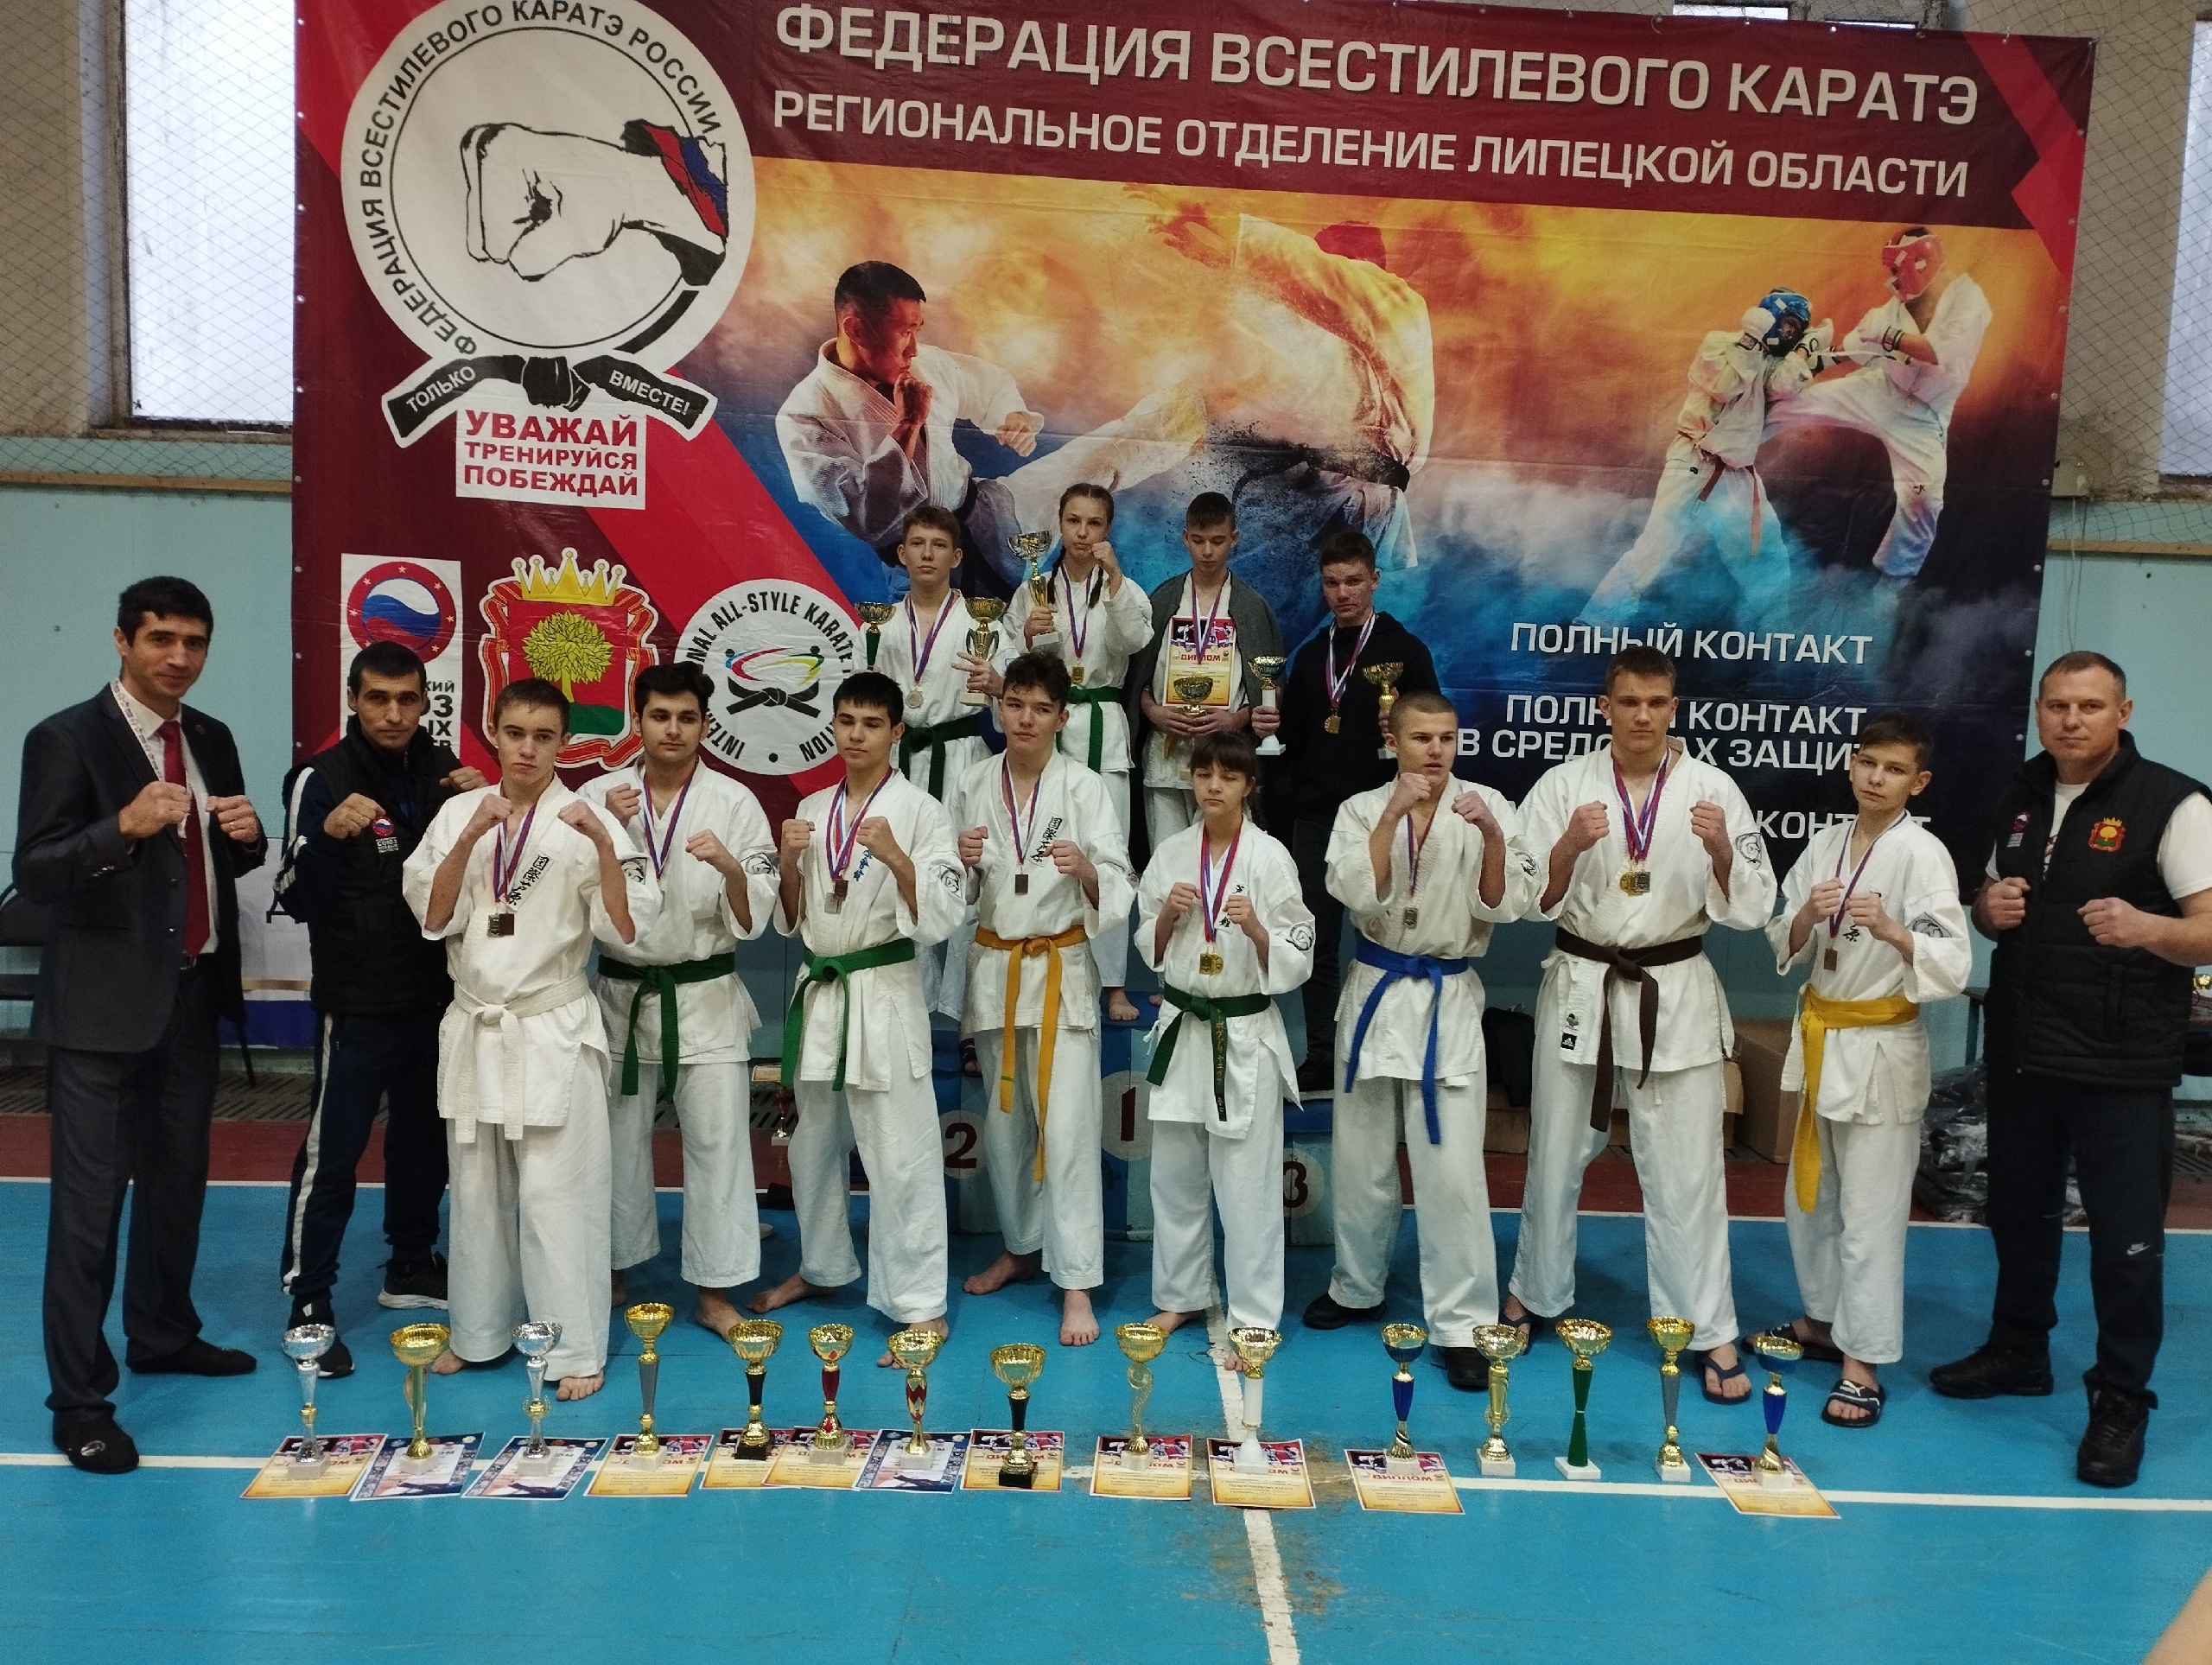 10-11 декабря в Липецке состоялись отборочные соревнования в сборную Липецкой области по всестилевому каратэ